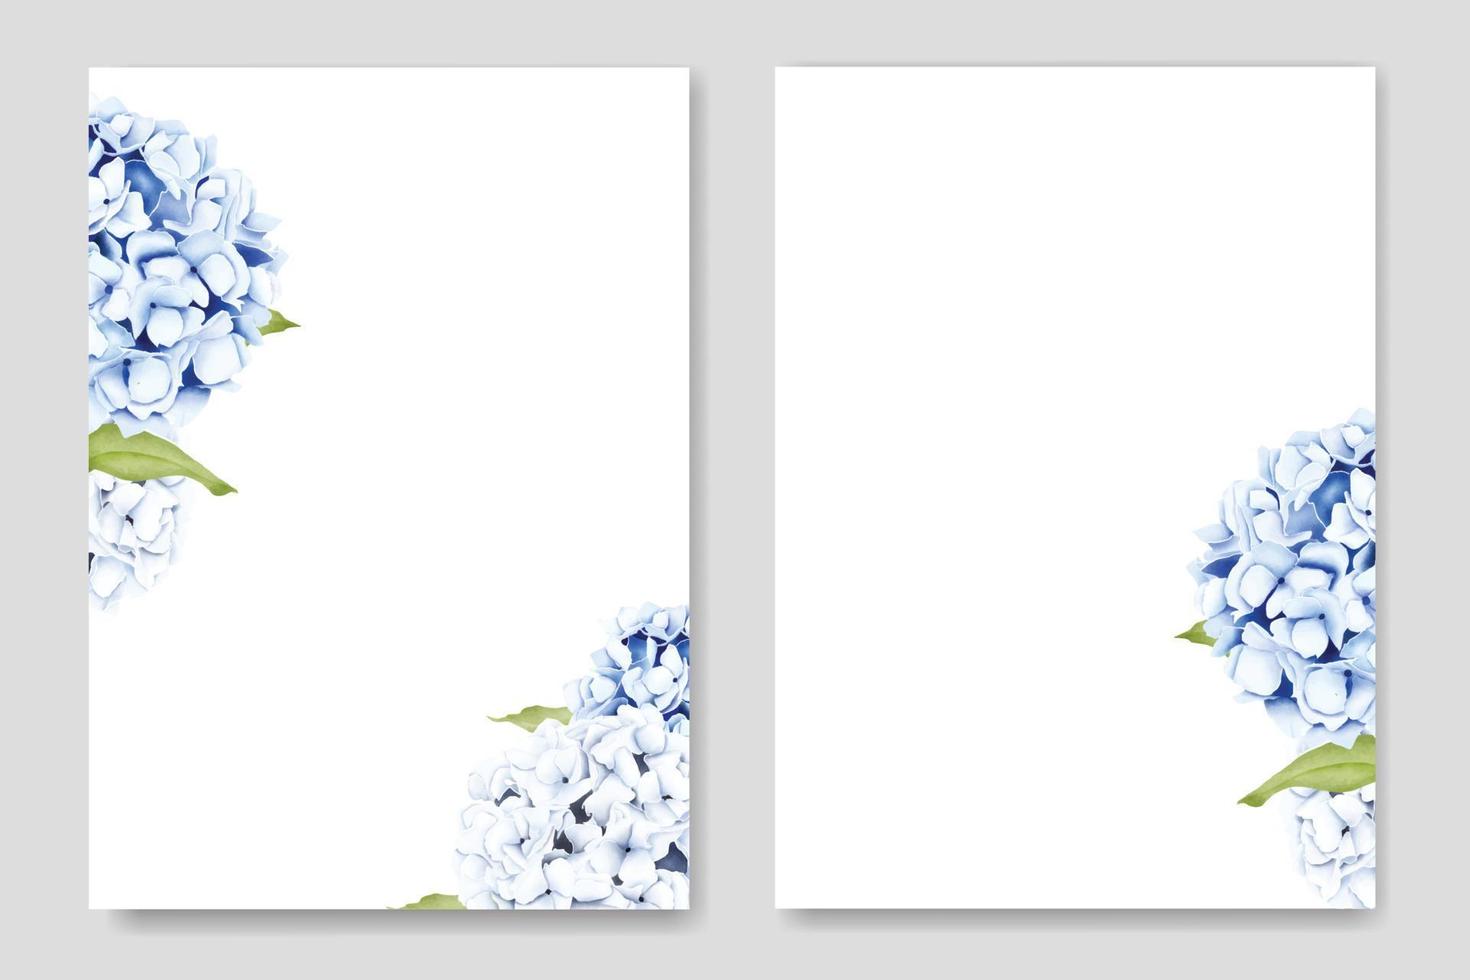 belle carte d'invitation de mariage floral hortensia vecteur